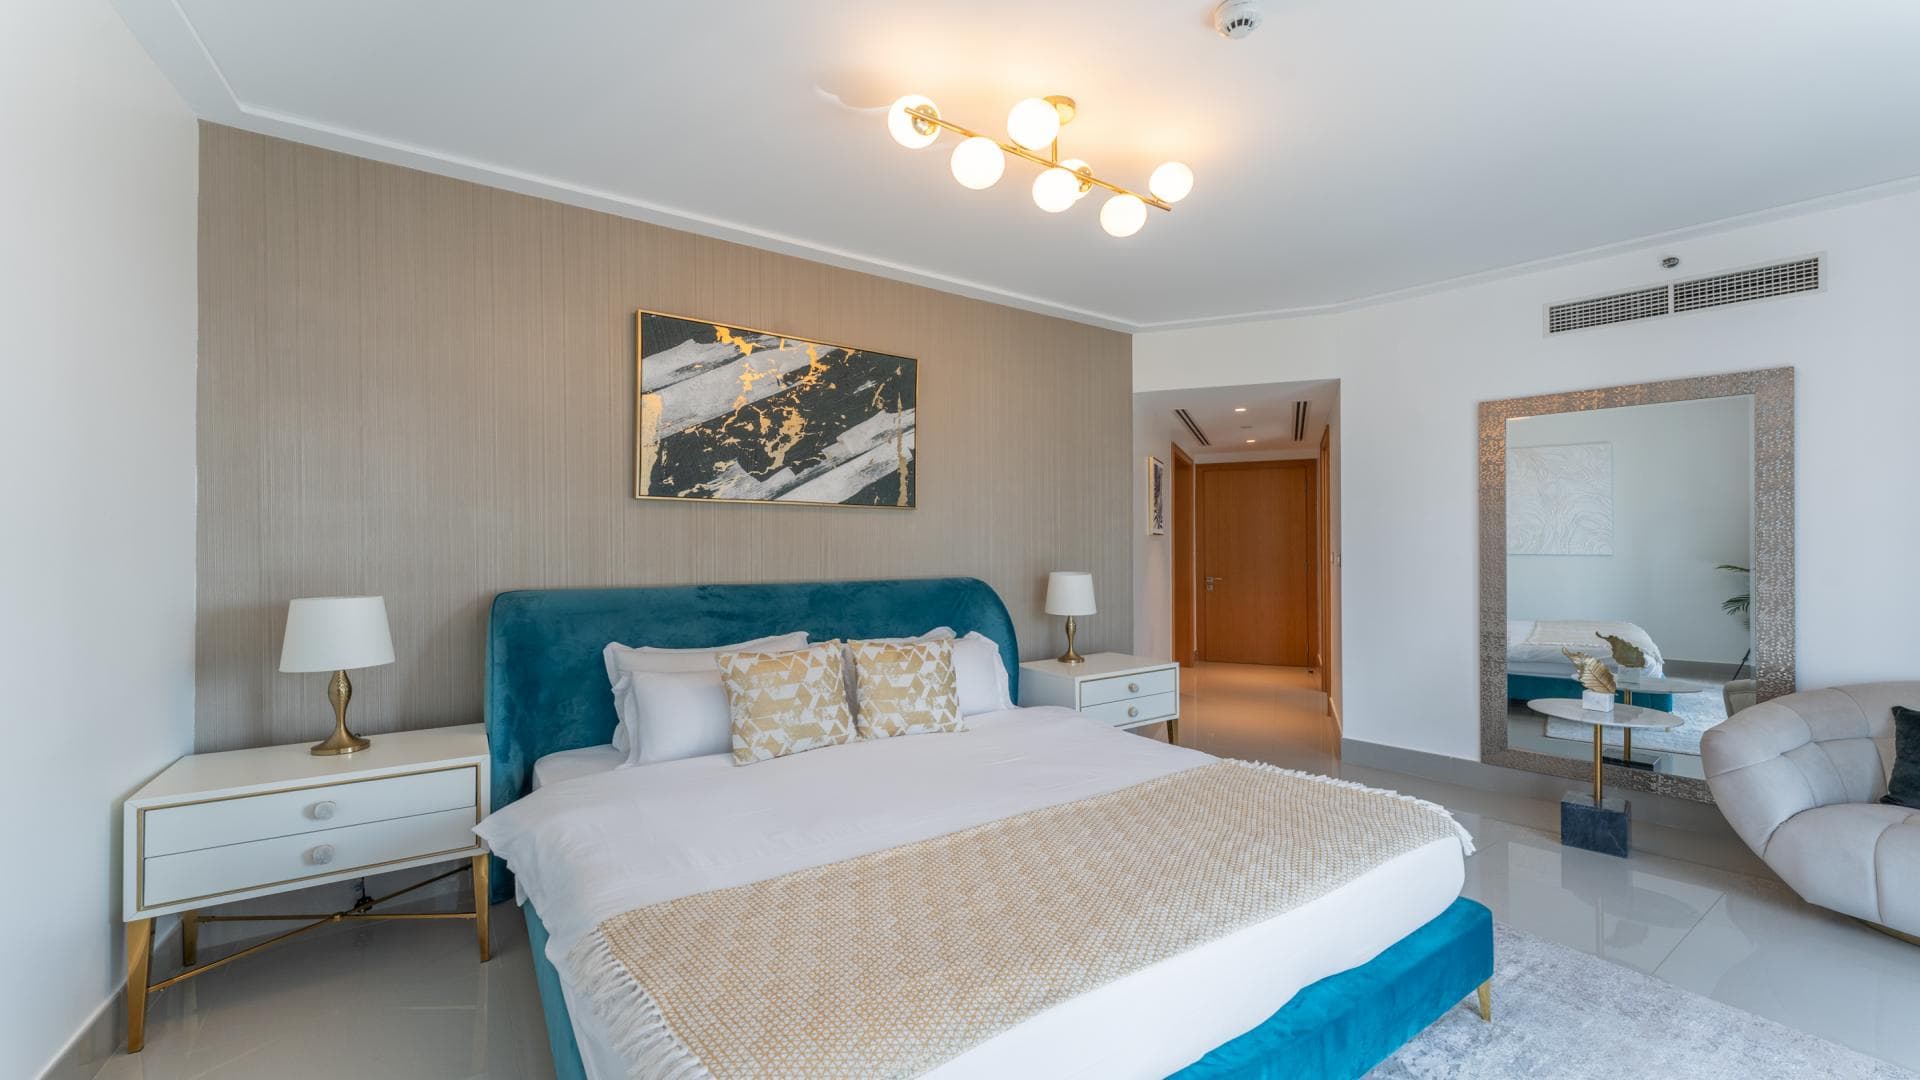 2 Bedroom Apartment For Rent Al Ramth 21 Lp37275 3286173a1d63dc0.jpg